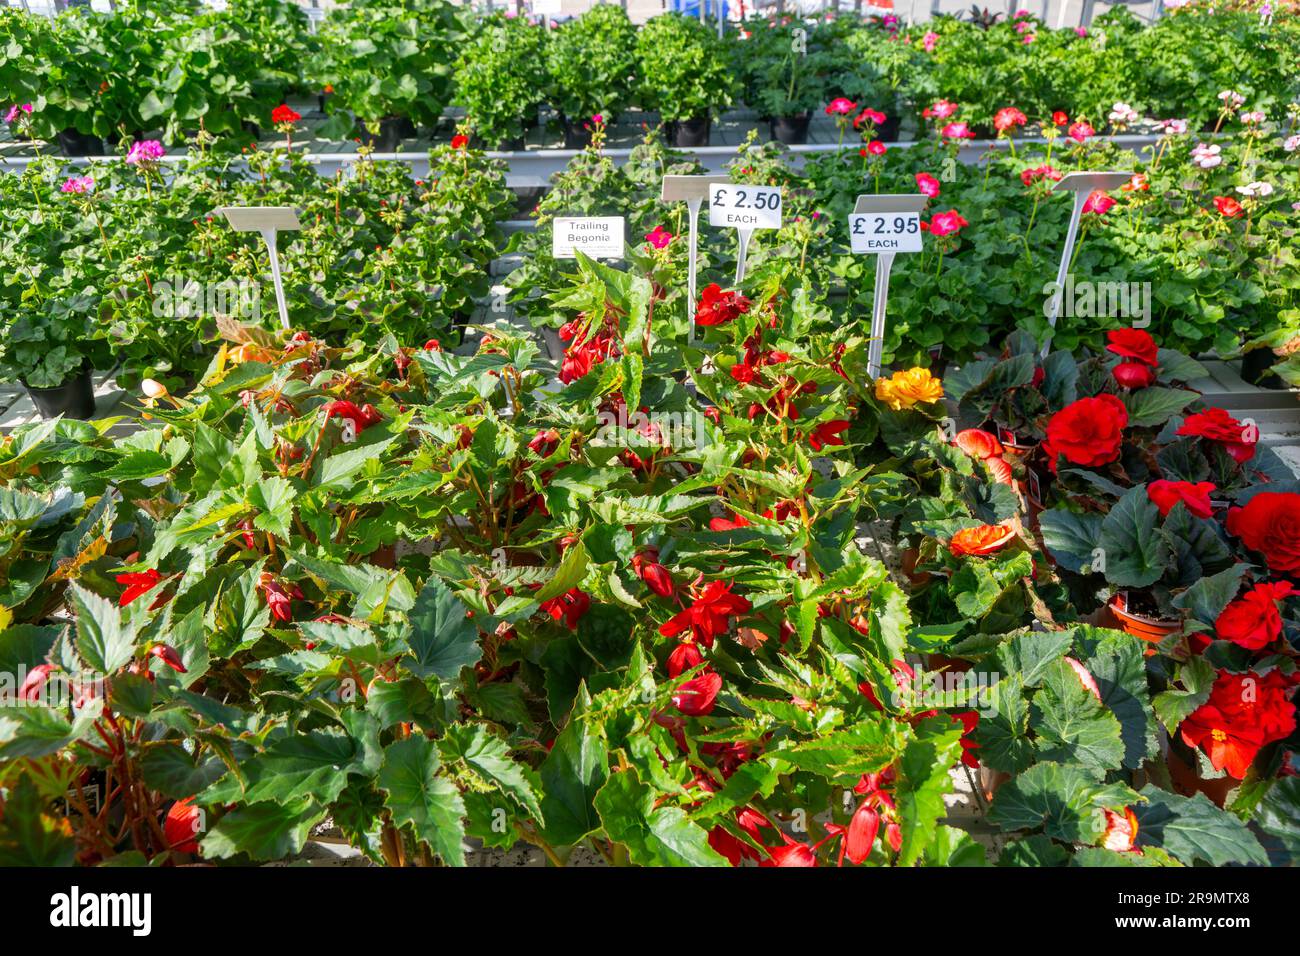 Plantas de begonia en maceta en exhibición dentro de invernadero de vivero de plantas, Ladybird Nurseries, Snape, Suffolk, Inglaterra, REINO UNIDO Foto de stock